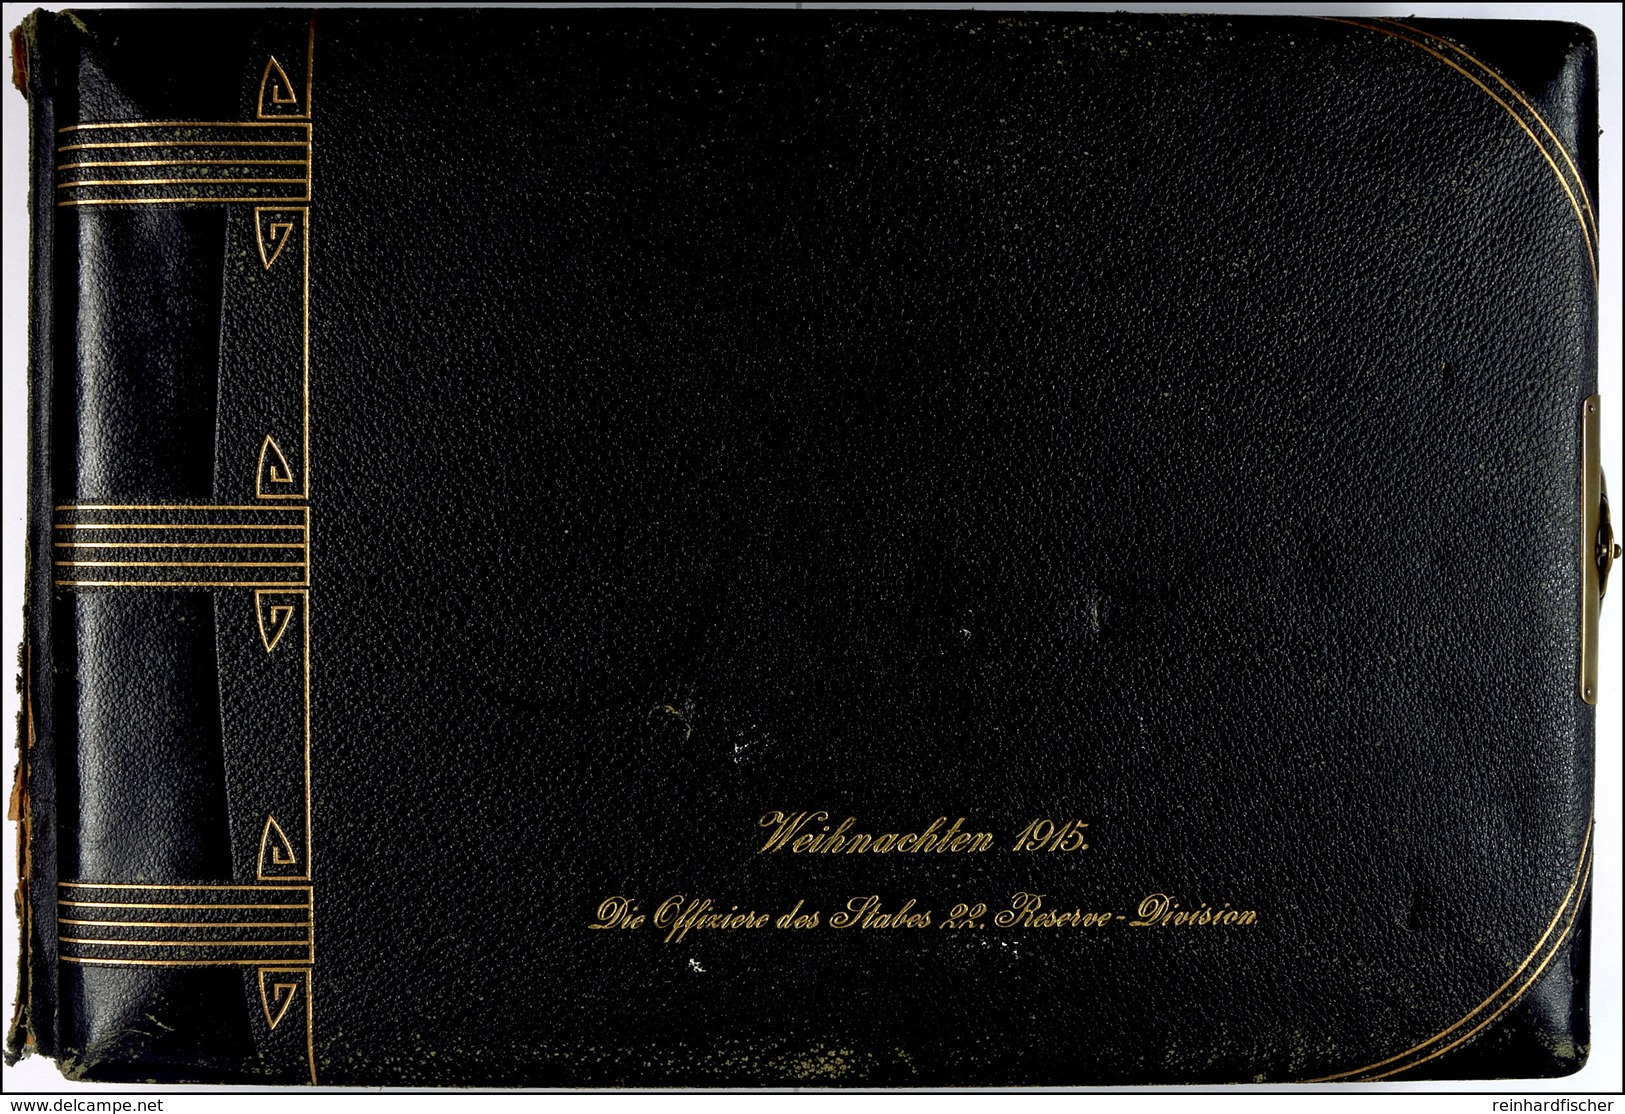 Fotoalbum Mit 79x Aufnahmen, Offiziere II. Weltkrieg, Album Schwarz Mit Goldschrift "Weihnachten 1915. Die Offiziere Des - Documenten